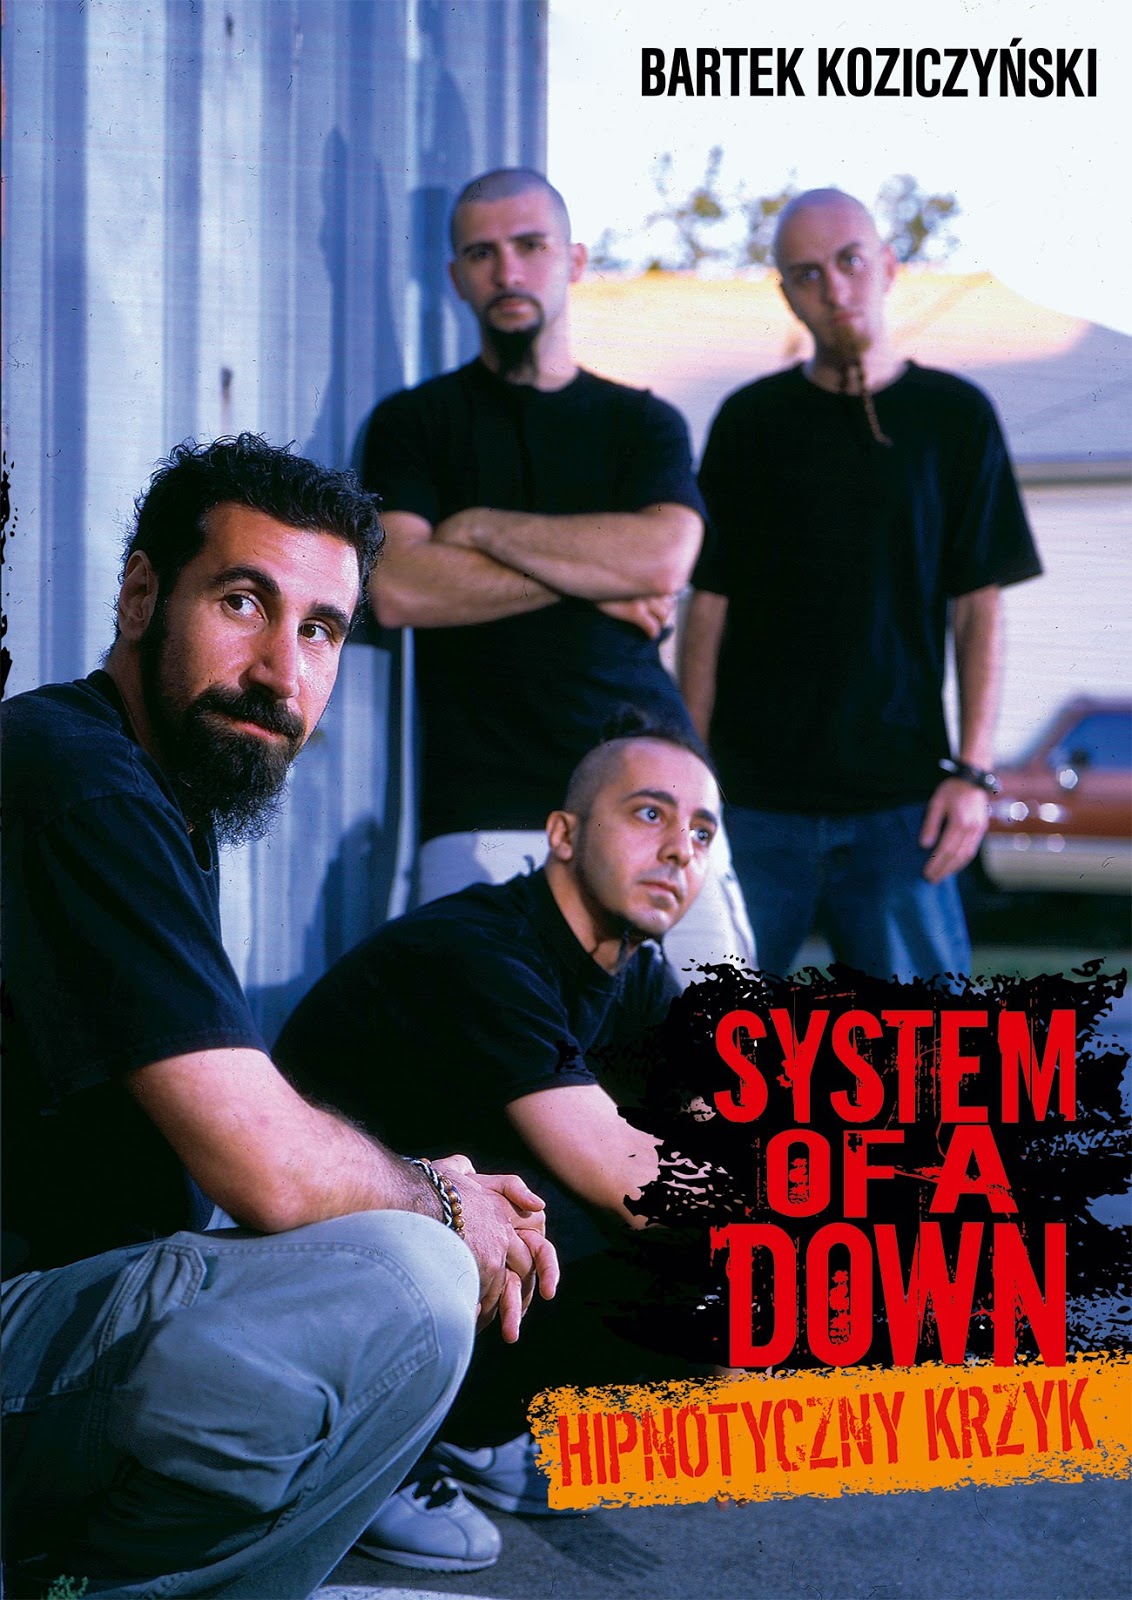 System Of A Down. Hipnotyczny krzyk, Bartek Koziczyński, Wydawnictwo In Rock, 2017